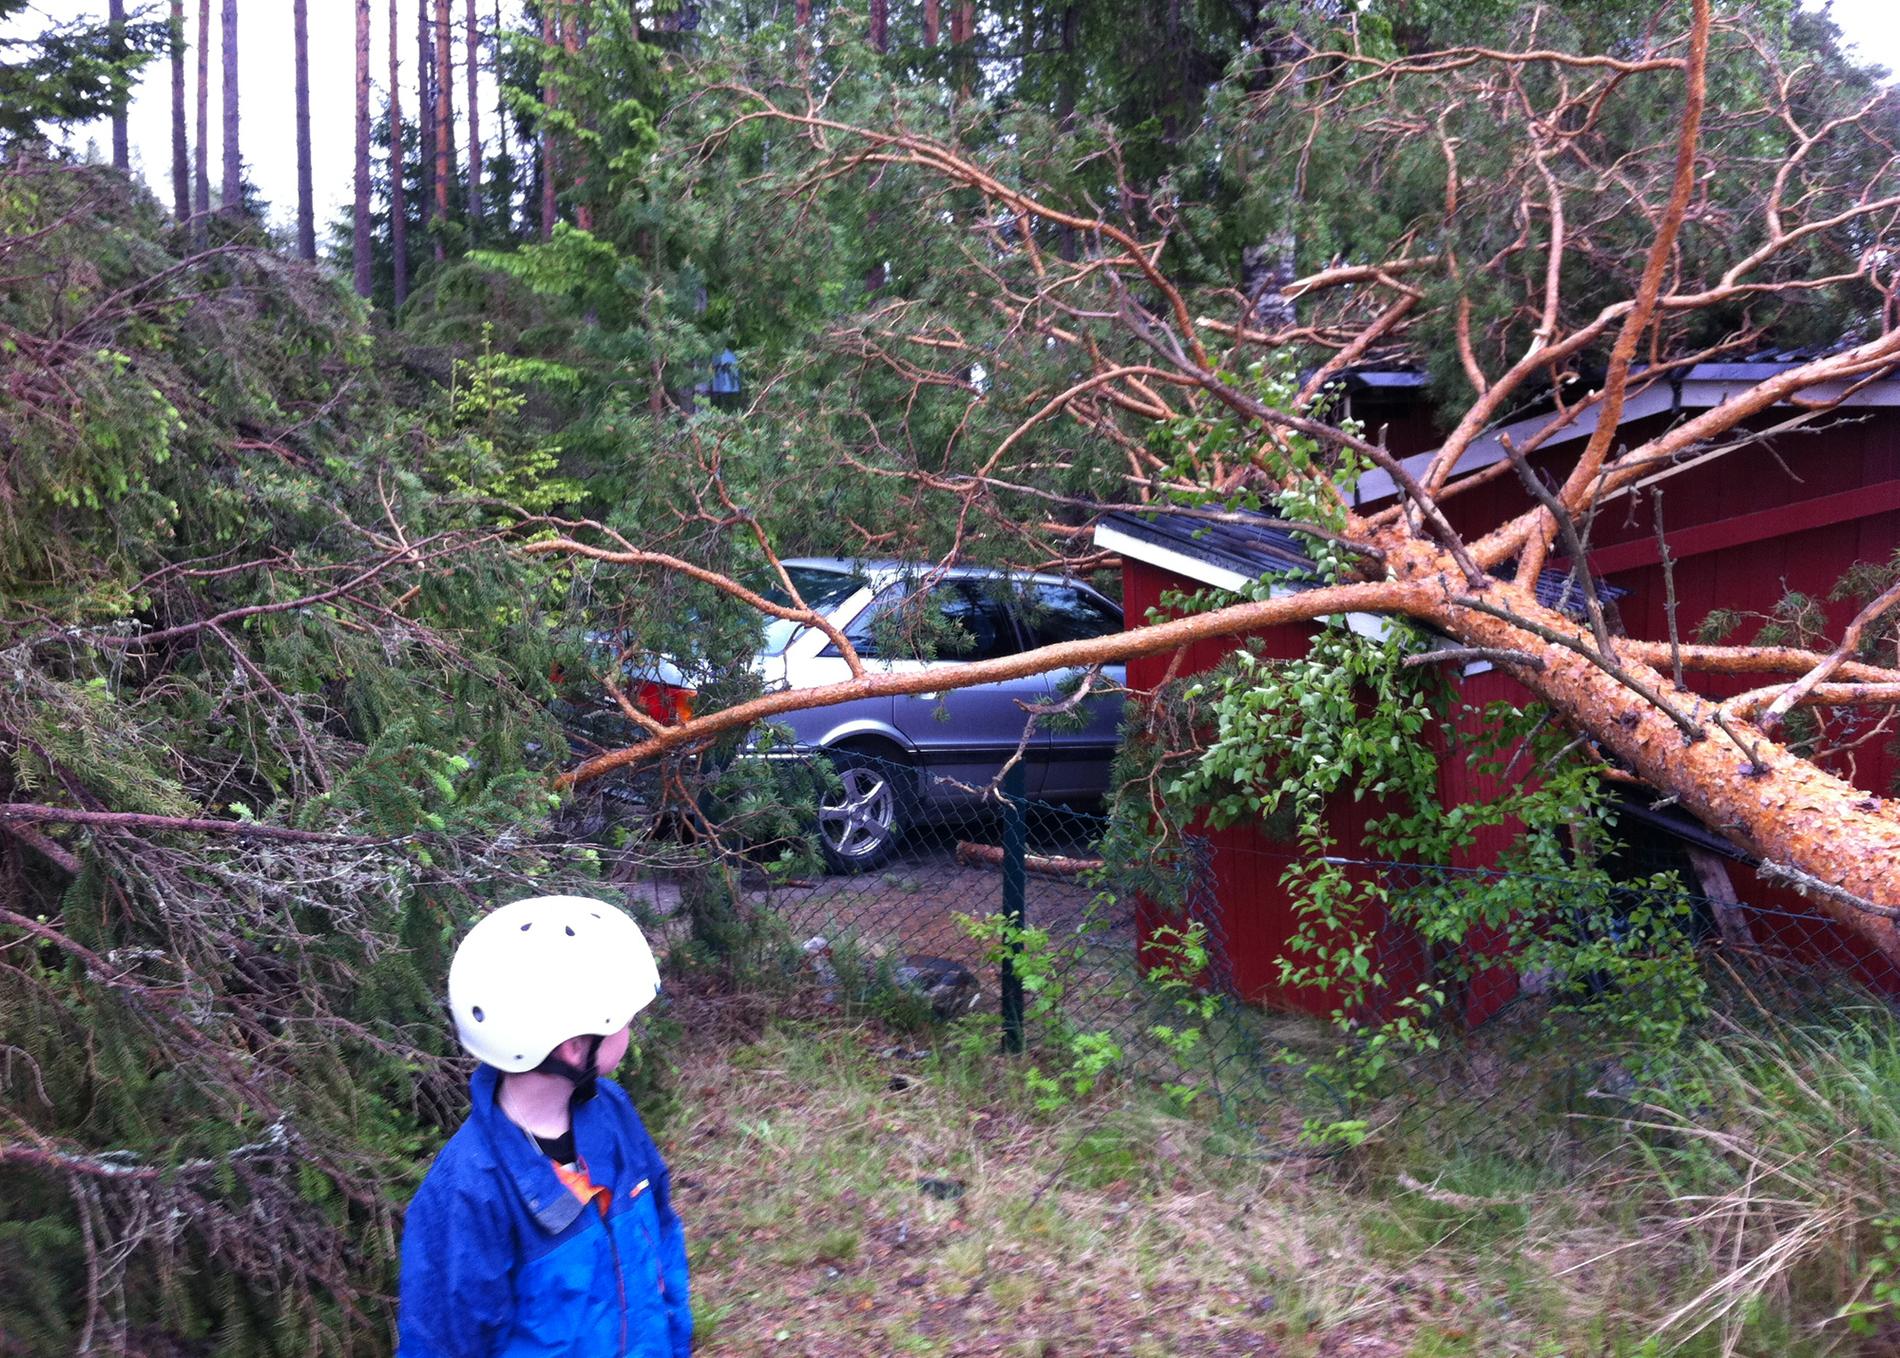 Nedfallna träd i Boviken, norr om Skellefteå, sedan en tromb passerat. Åska och tromber drabbade Västerbotten med kallfronten som passerade på lördagen. Mer än 6 000 abonnenter blev strömlösa när träd föll över elledningar och vägar.